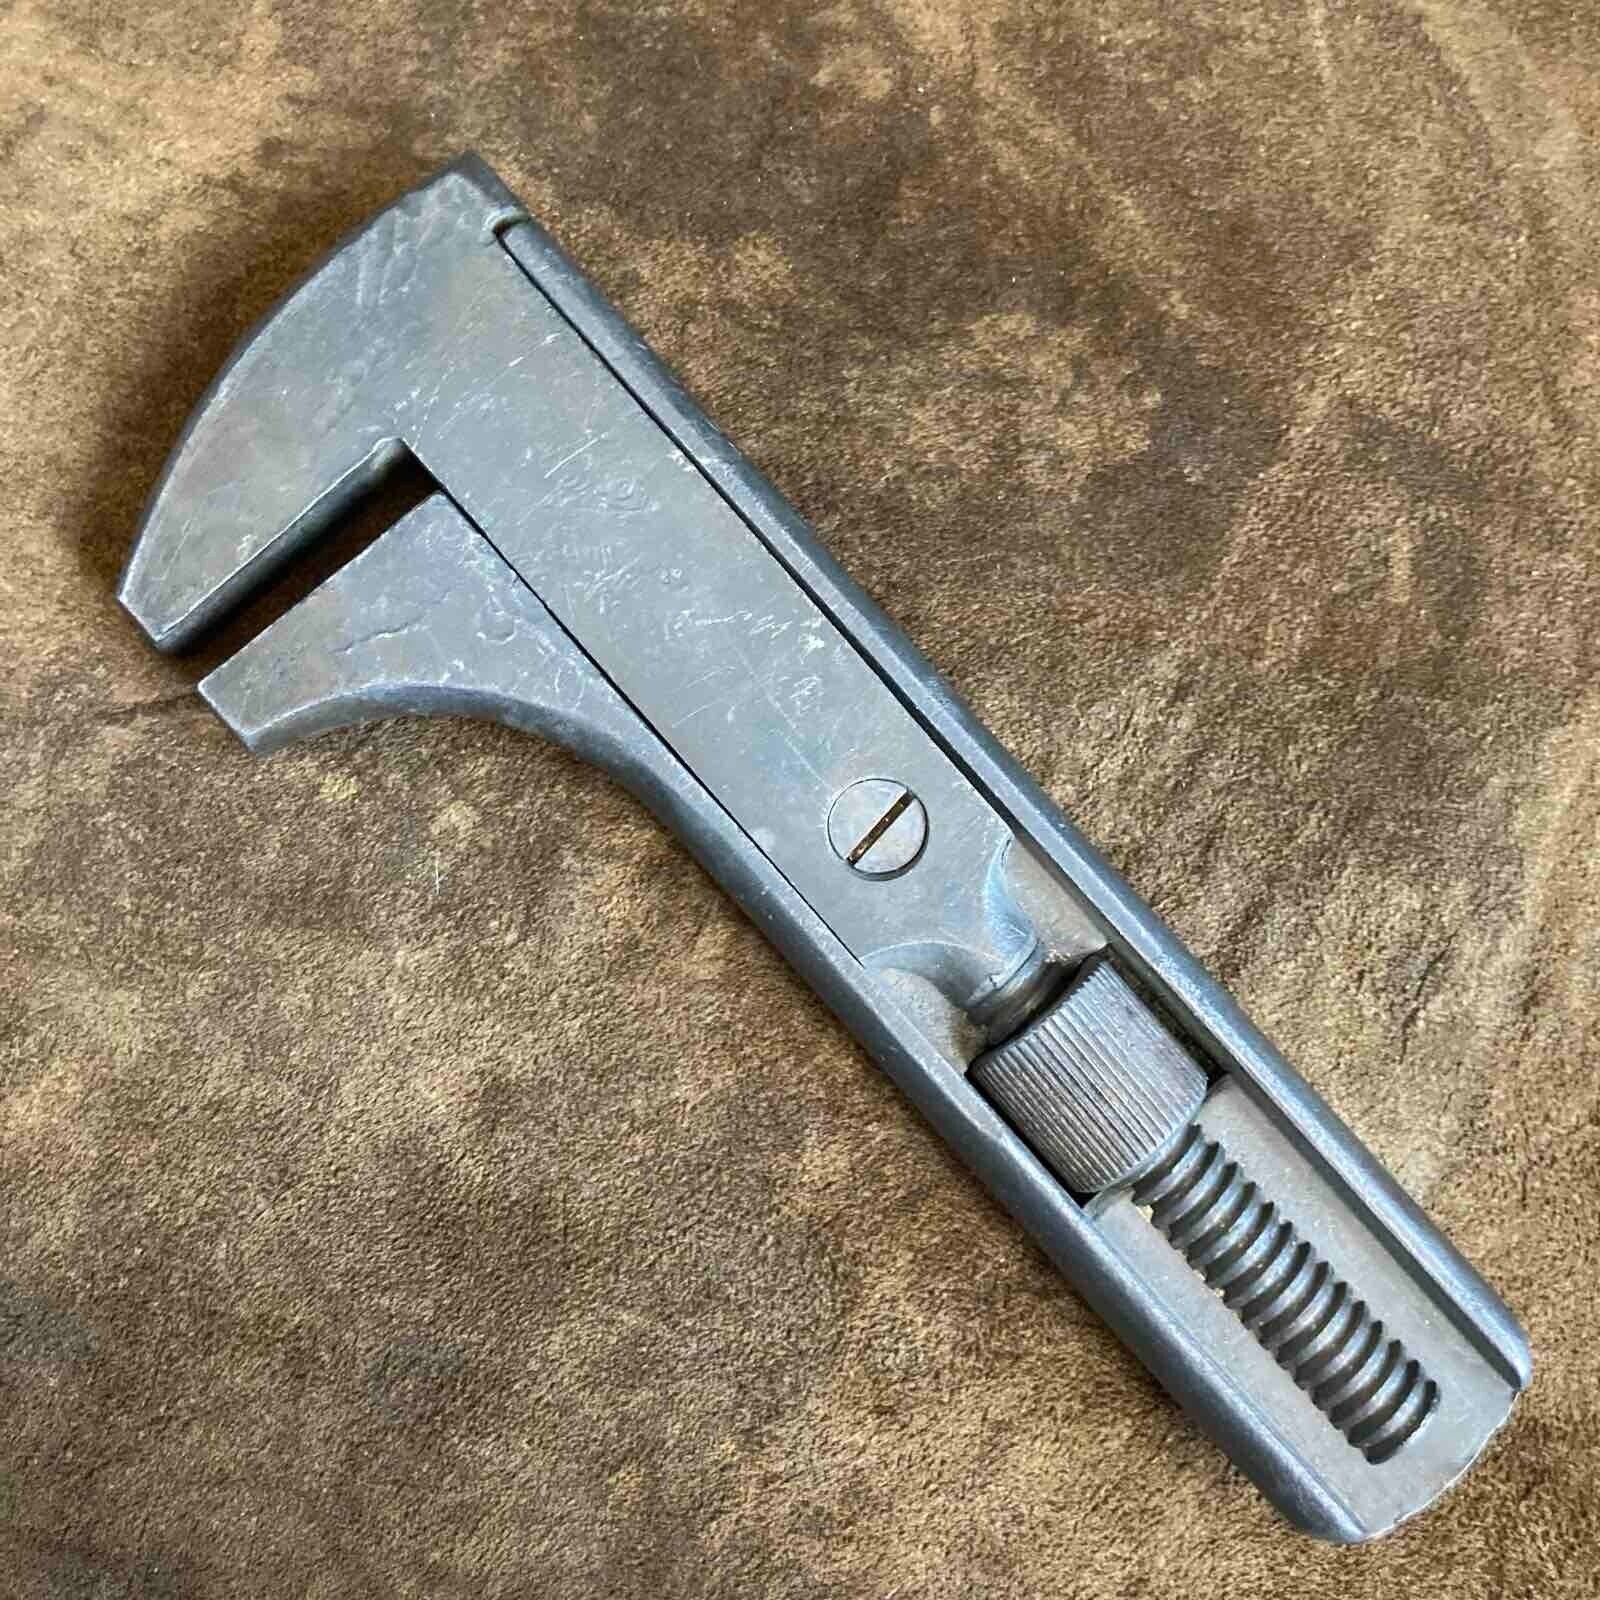 Vintage / Antique Adjustable Spanner Wrench